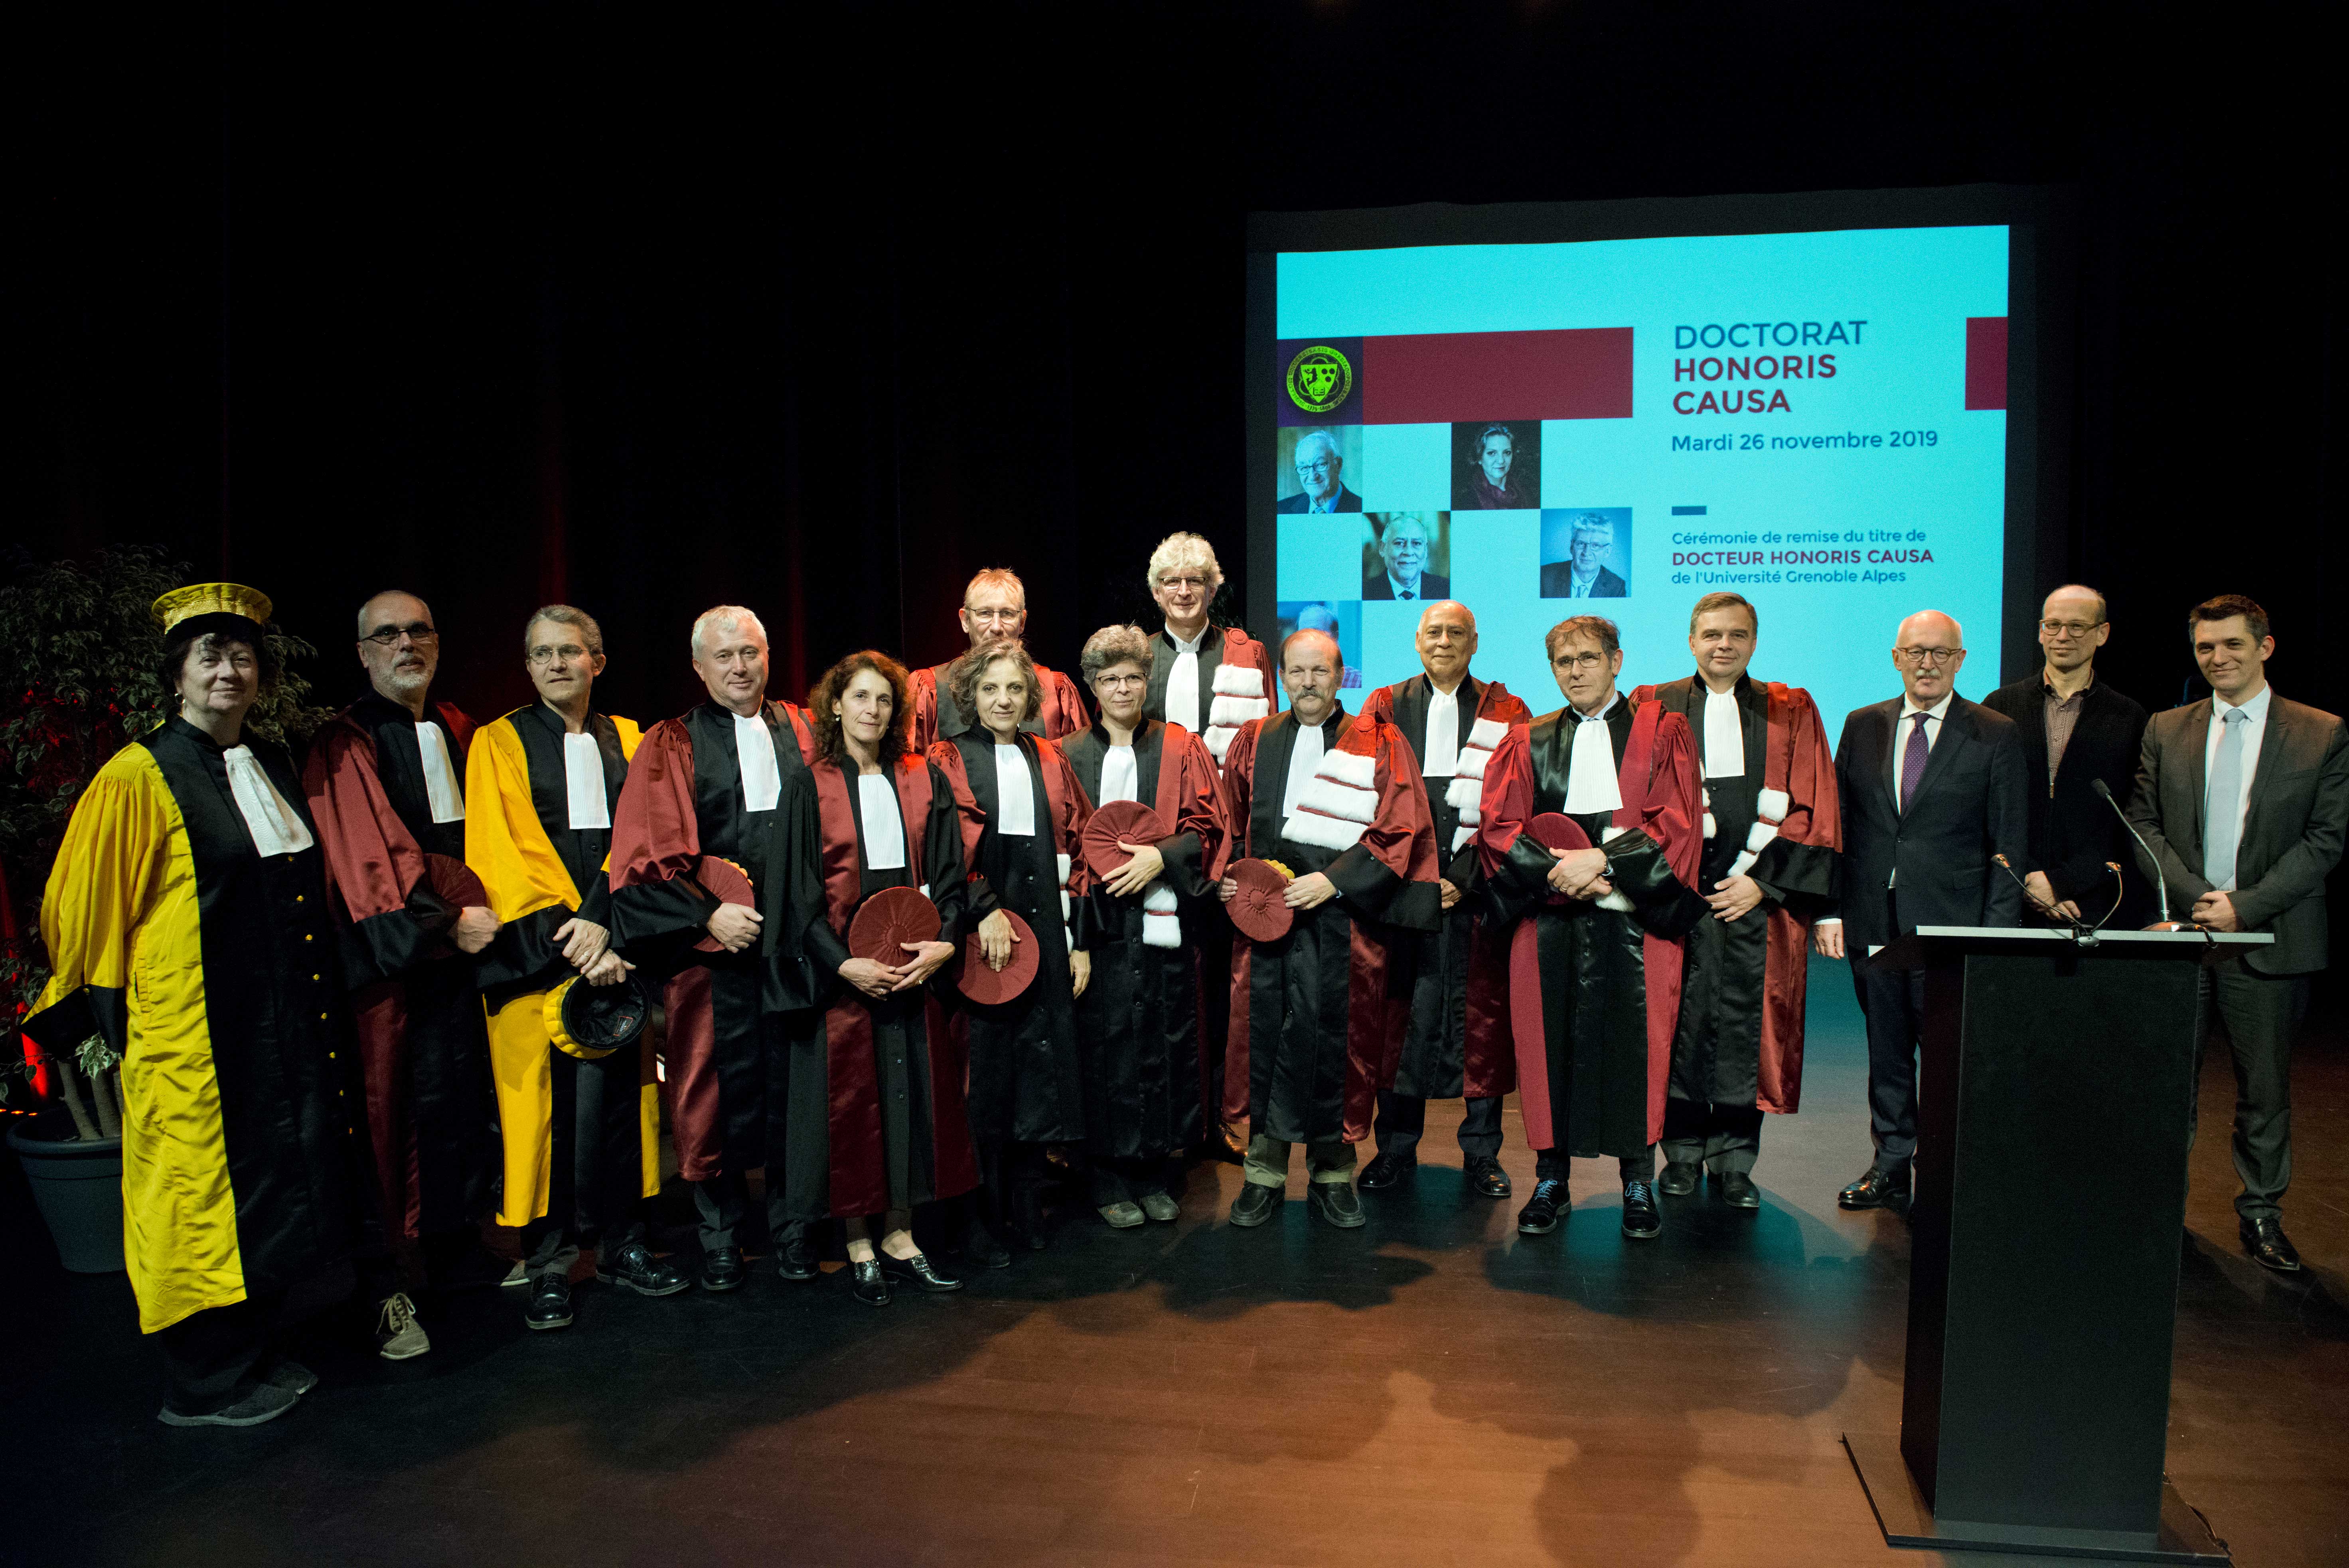 Photo de groupe en présence de Max Maldacker, consul général d’Allemagne à Lyon, de Fabien Malbet, maire-adjoint de Grenoble, et d’Aymeric Meiss, directeur de cabinet de la rectrice de l’académie de Grenoble